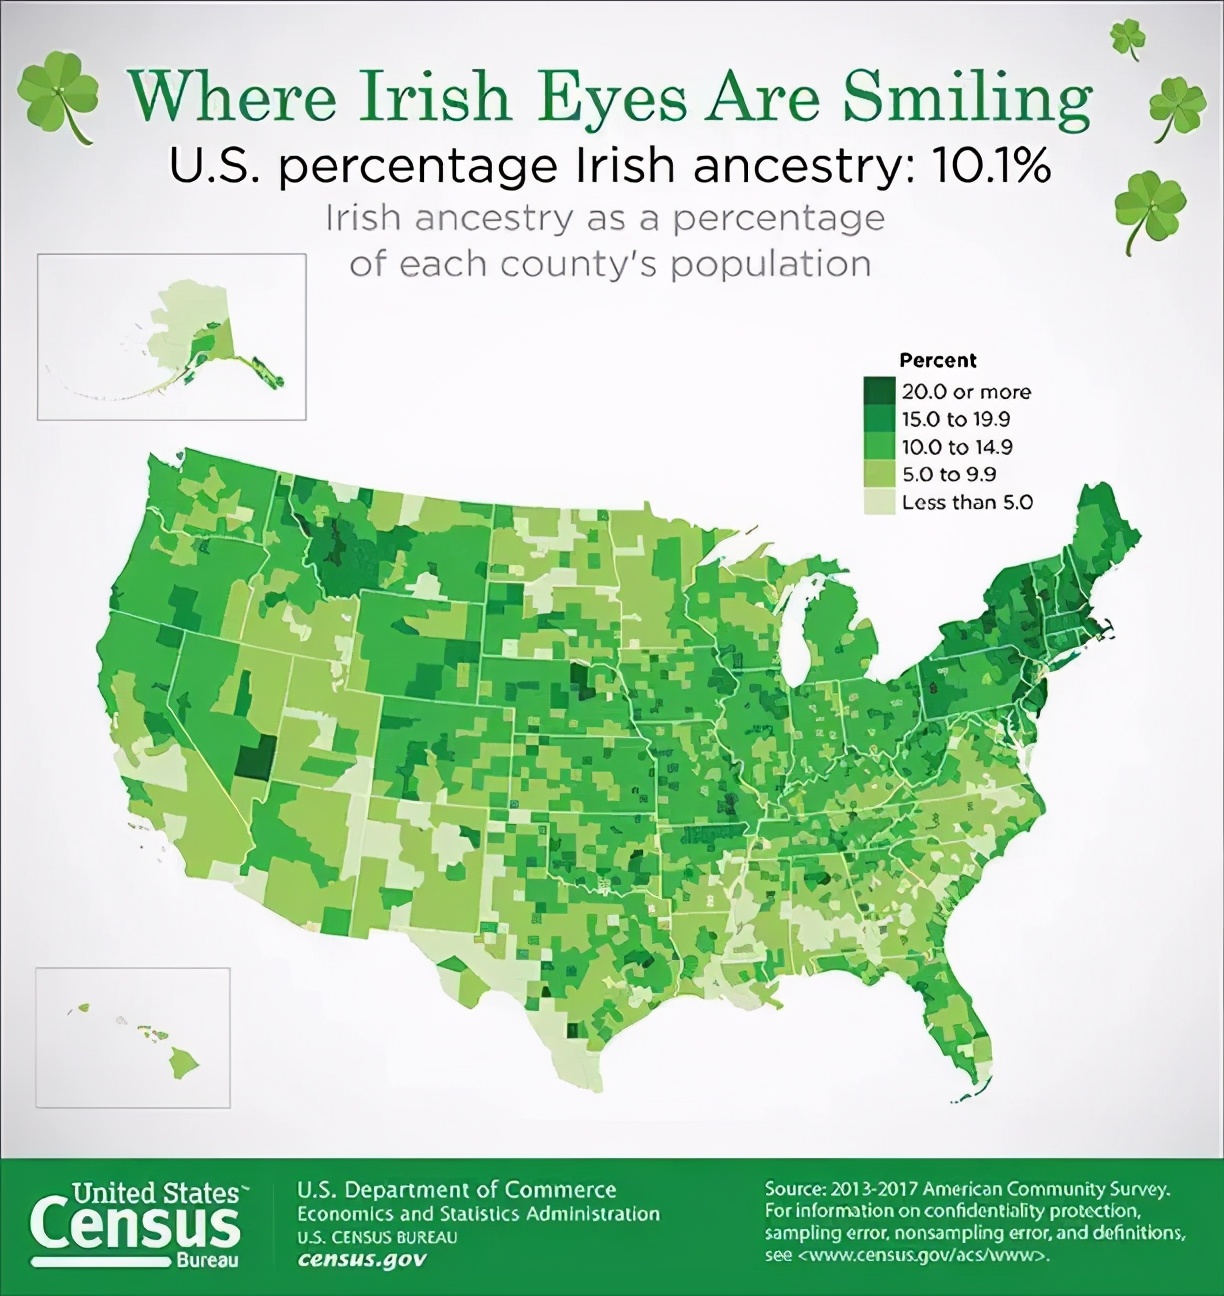 惊讶脸，原来三分之一的美国总统都是爱尔兰的后裔？